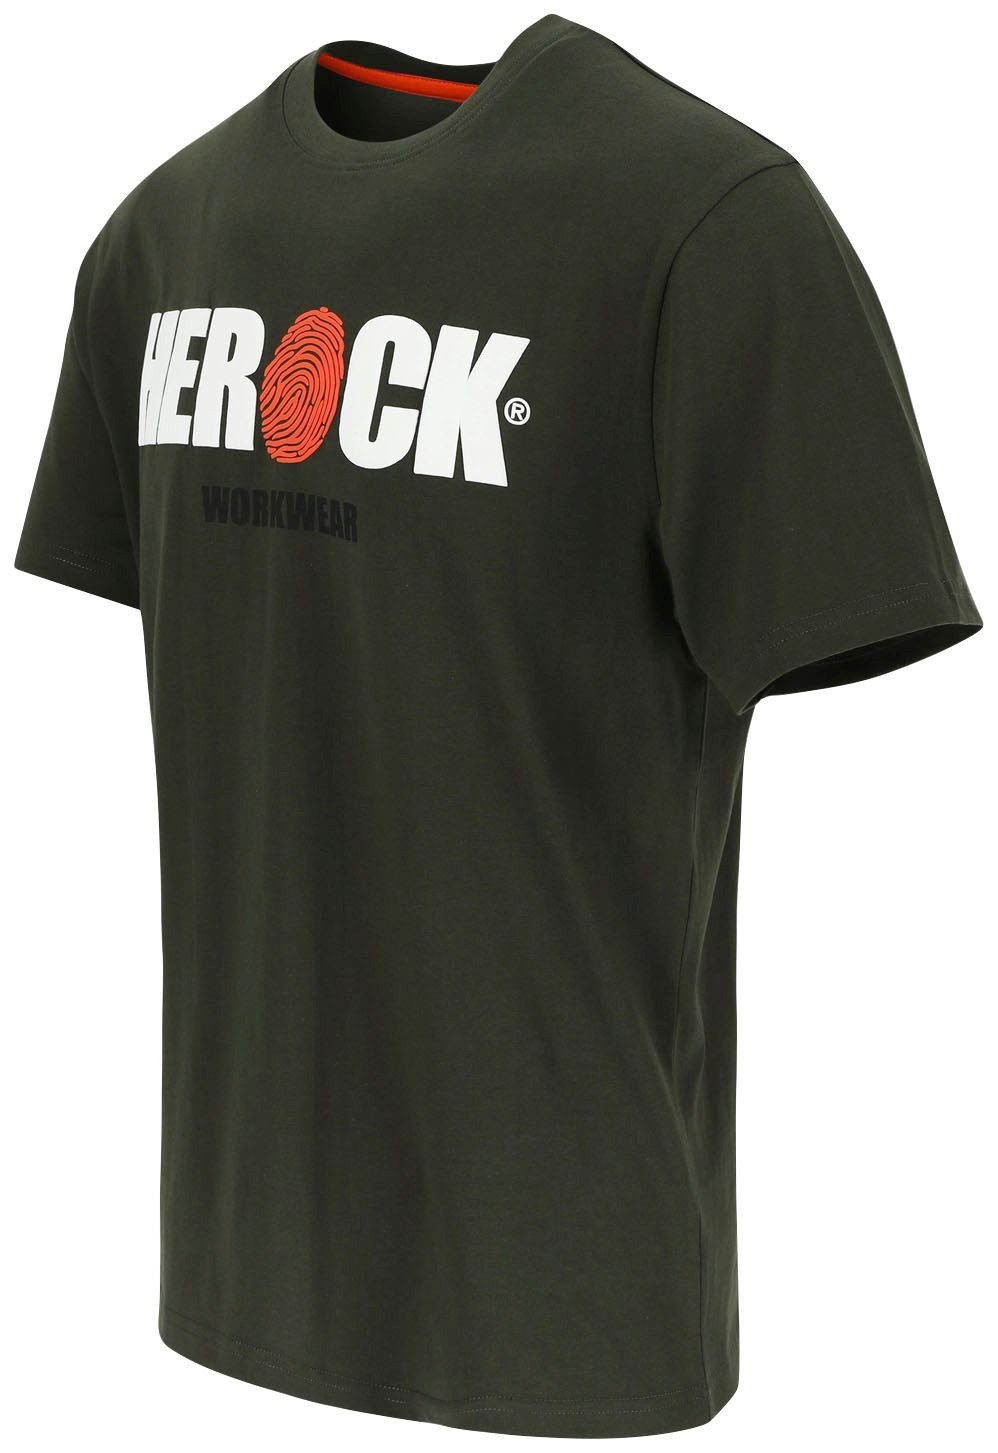 Herock®-Aufdruck, Herock ENI Tragegefühl Baumwolle, Rundhals, mit khaki angenehmes T-Shirt